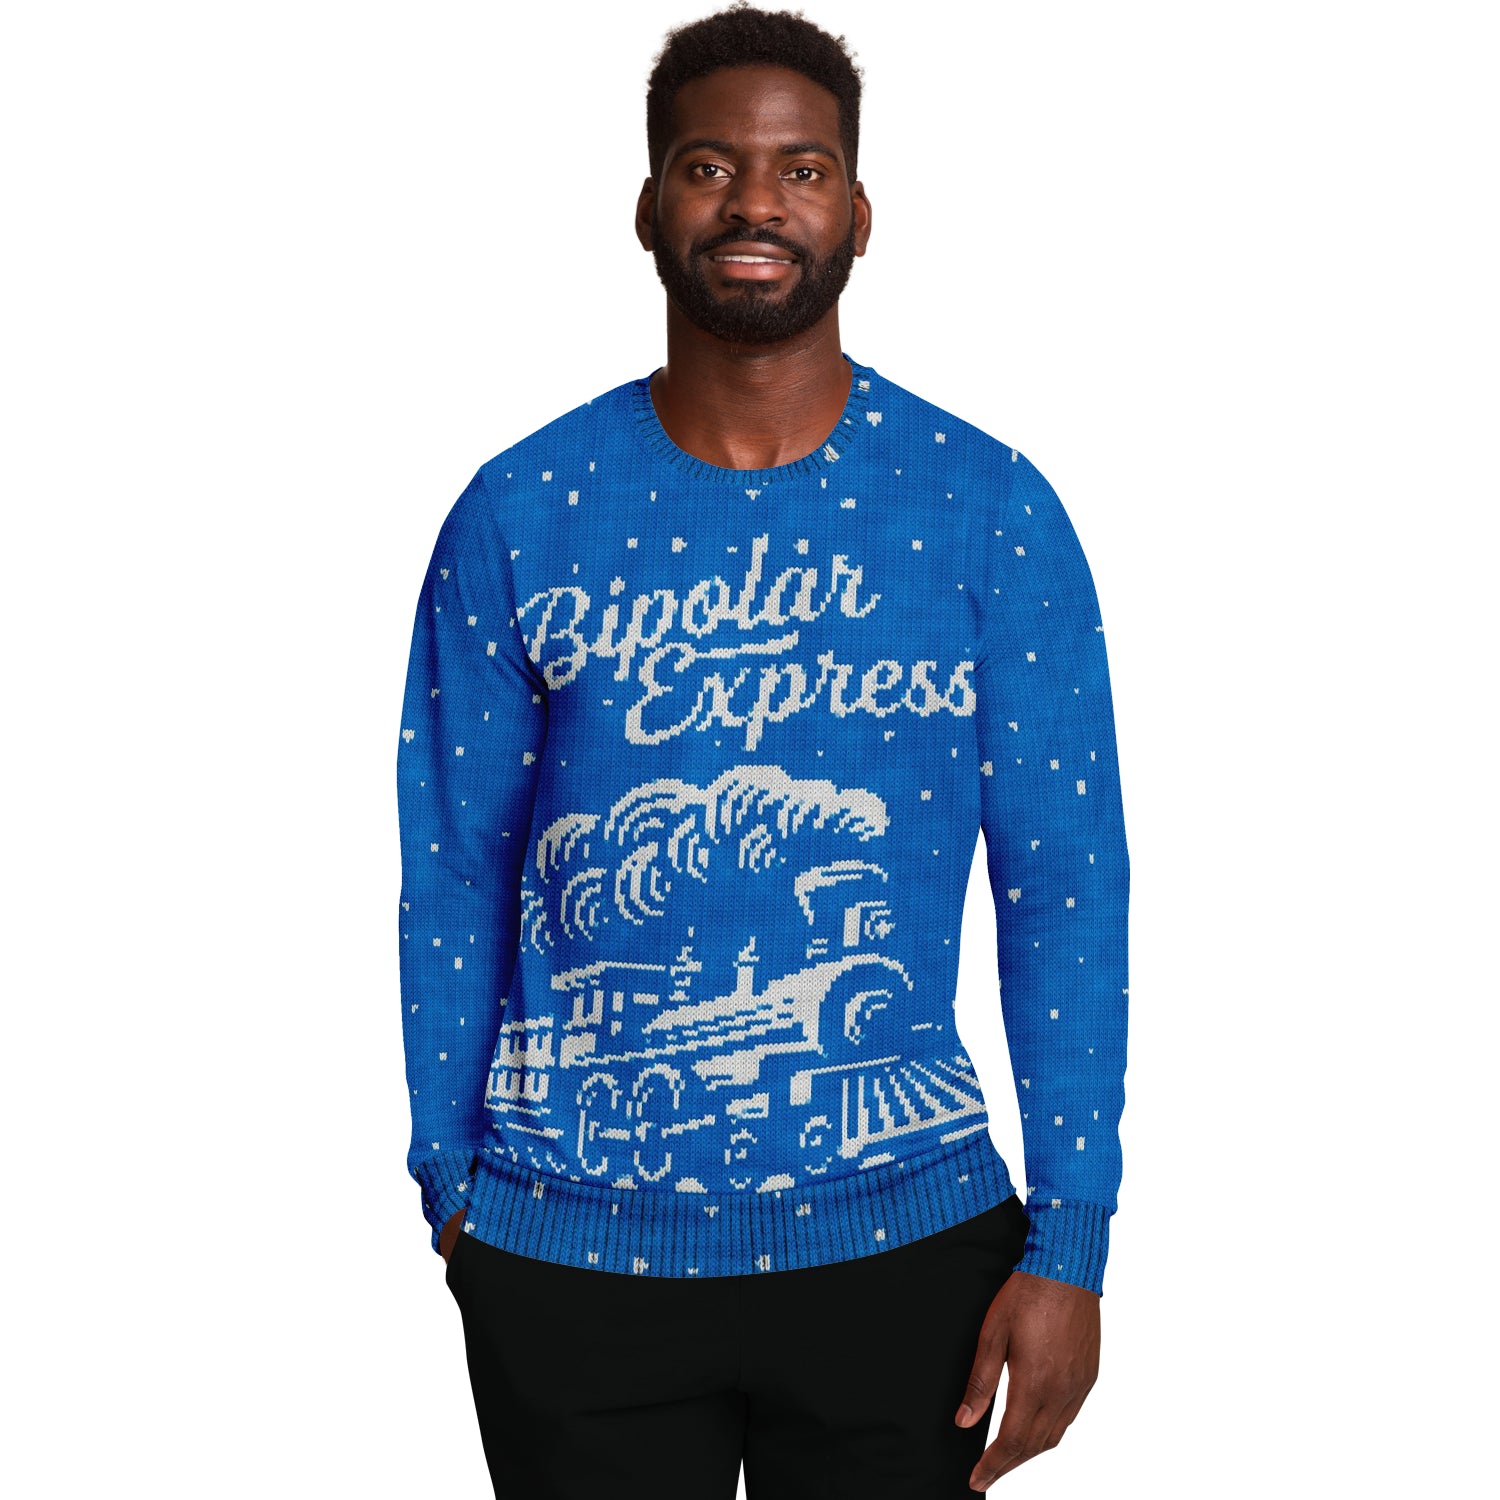 Bipolar Express Sweatshirt